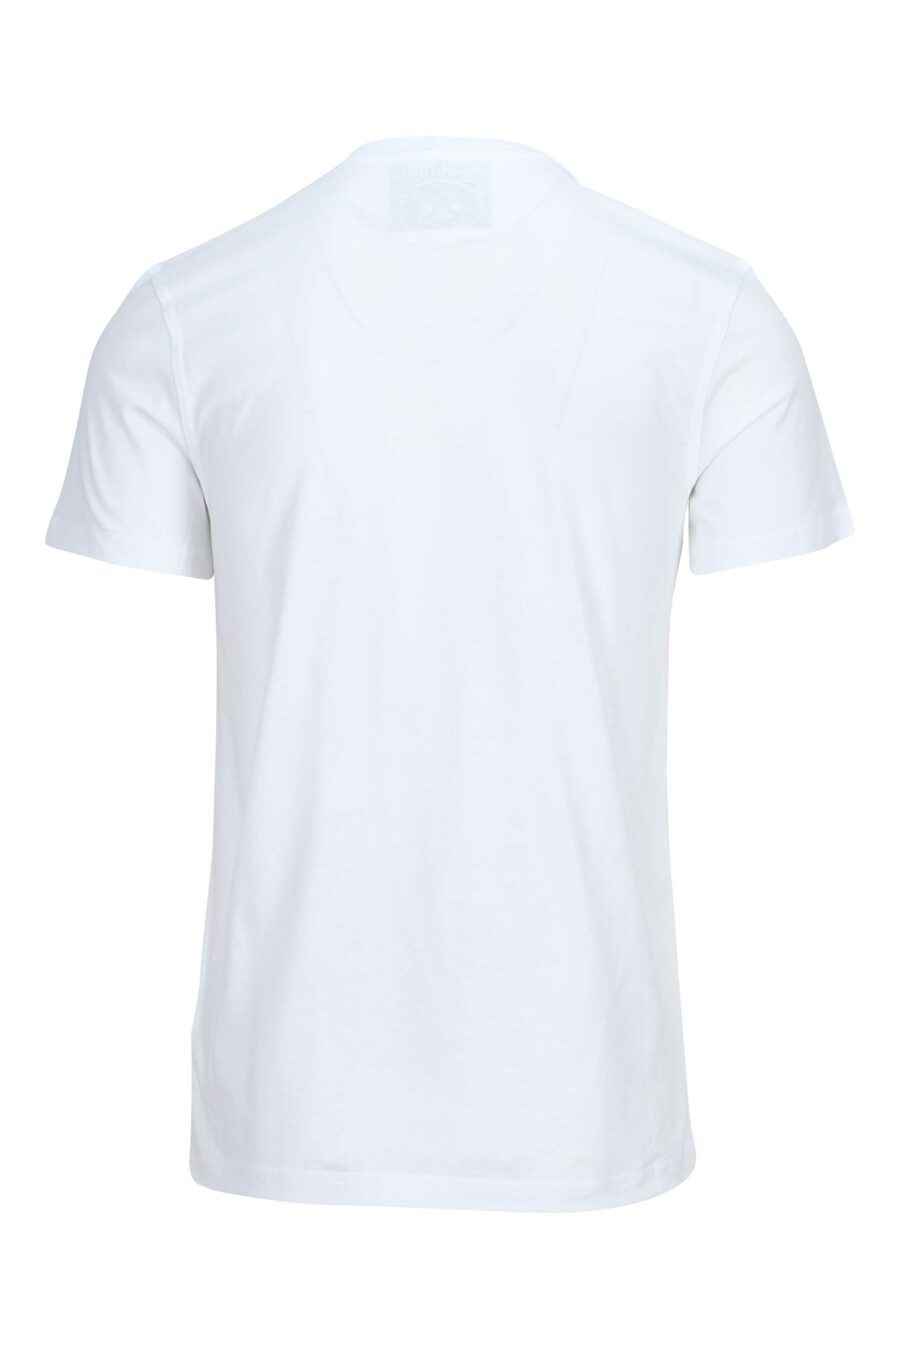 Camiseta blanca de algodón ecológico con maxilogo "teddy" - 889316854503 1